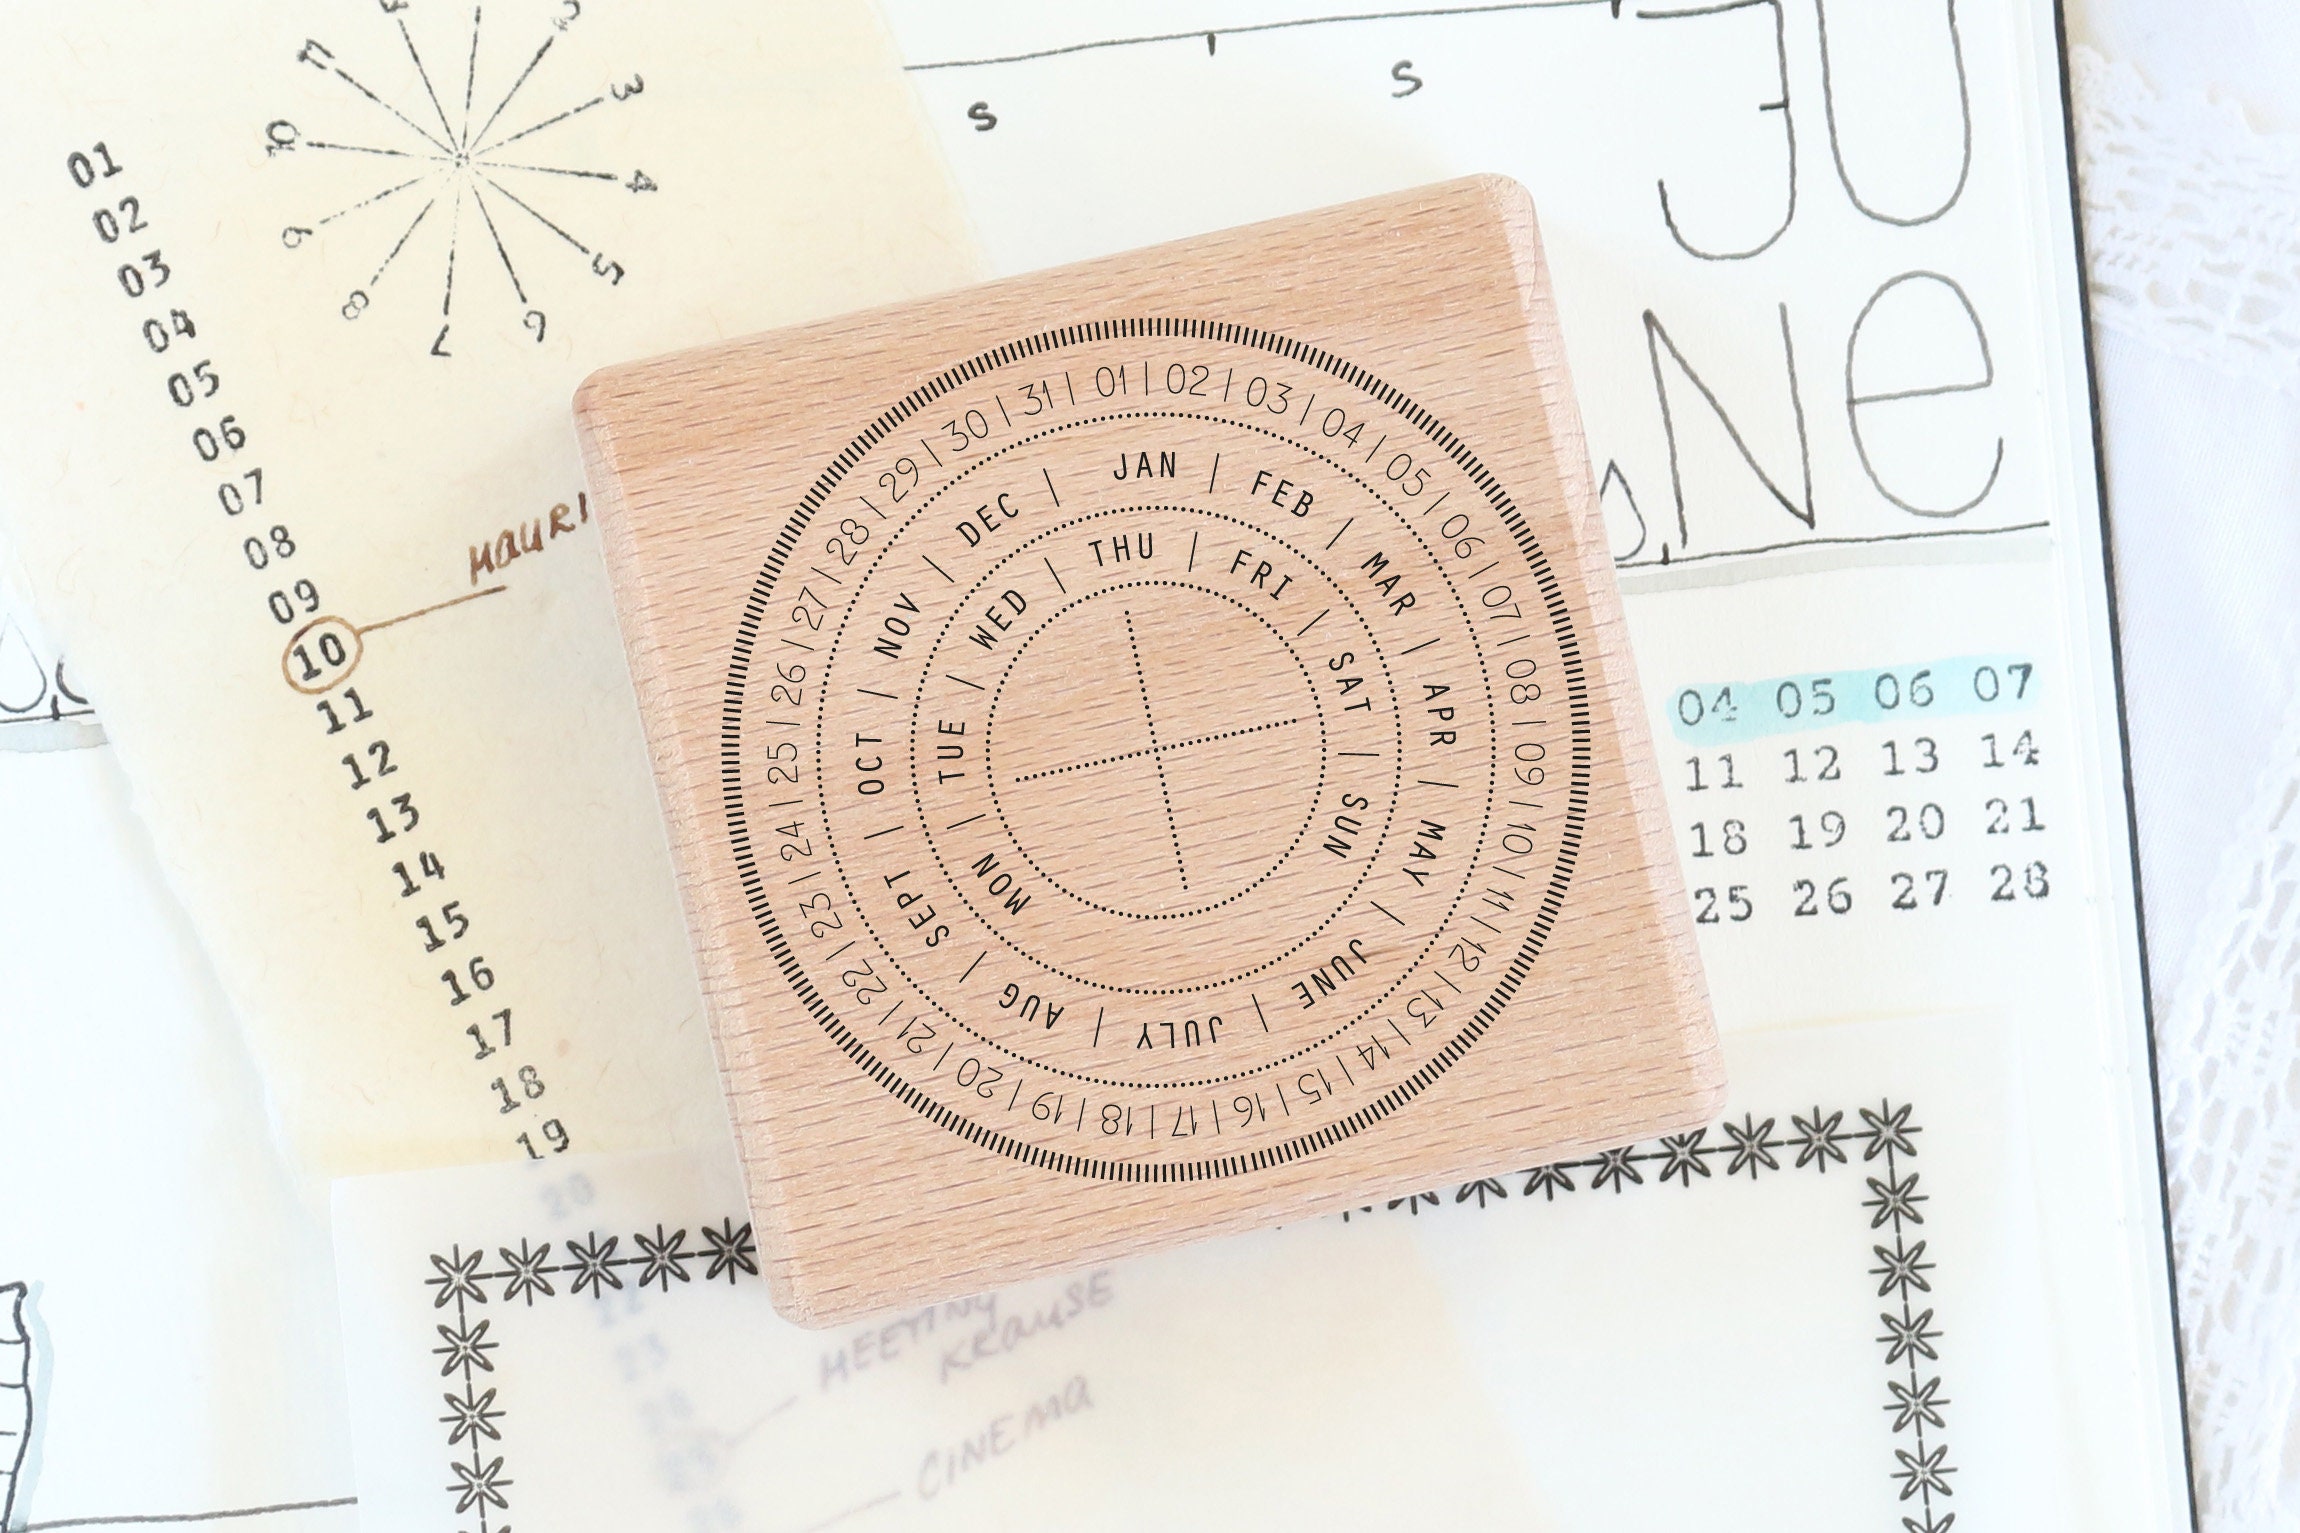 Stamp Perpetual Calendar Stamp, Perpetual Circle Date, Date Stamp